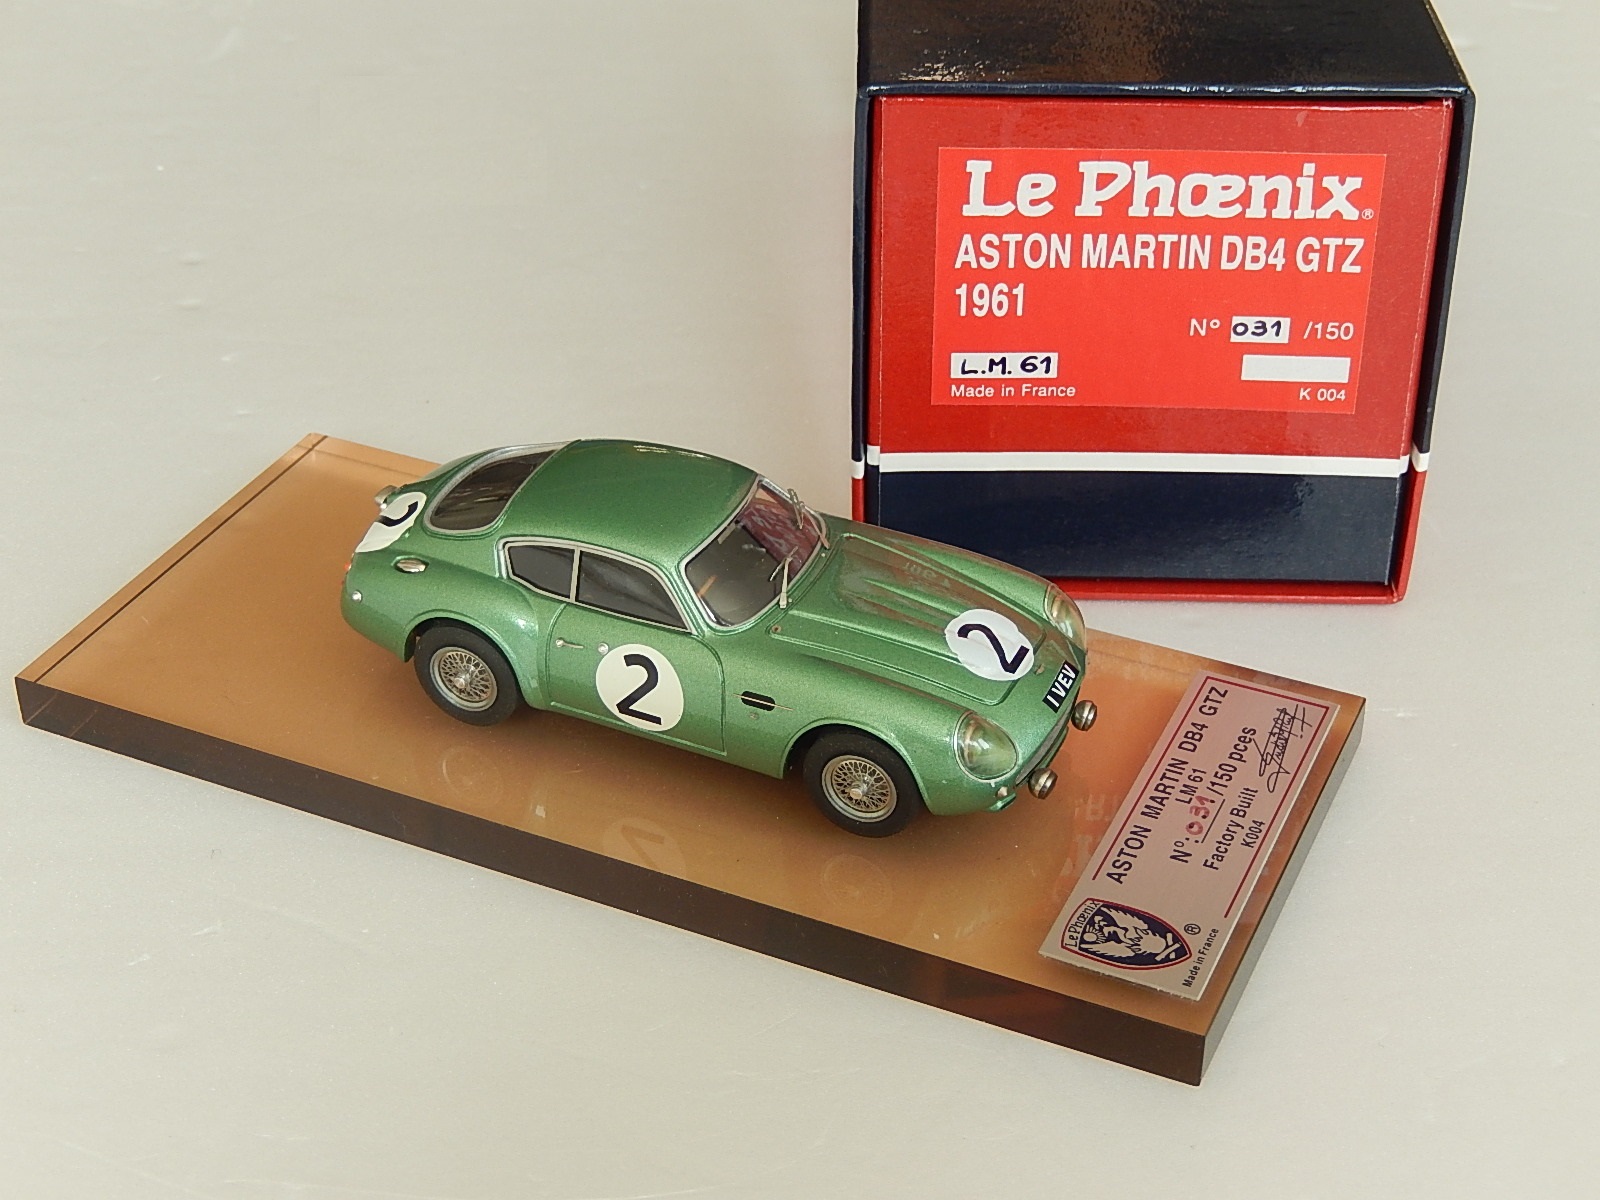 即時発送★ 1/43 Le Phoenix Aston Martin DB4GTZ LM61 レーシングカー